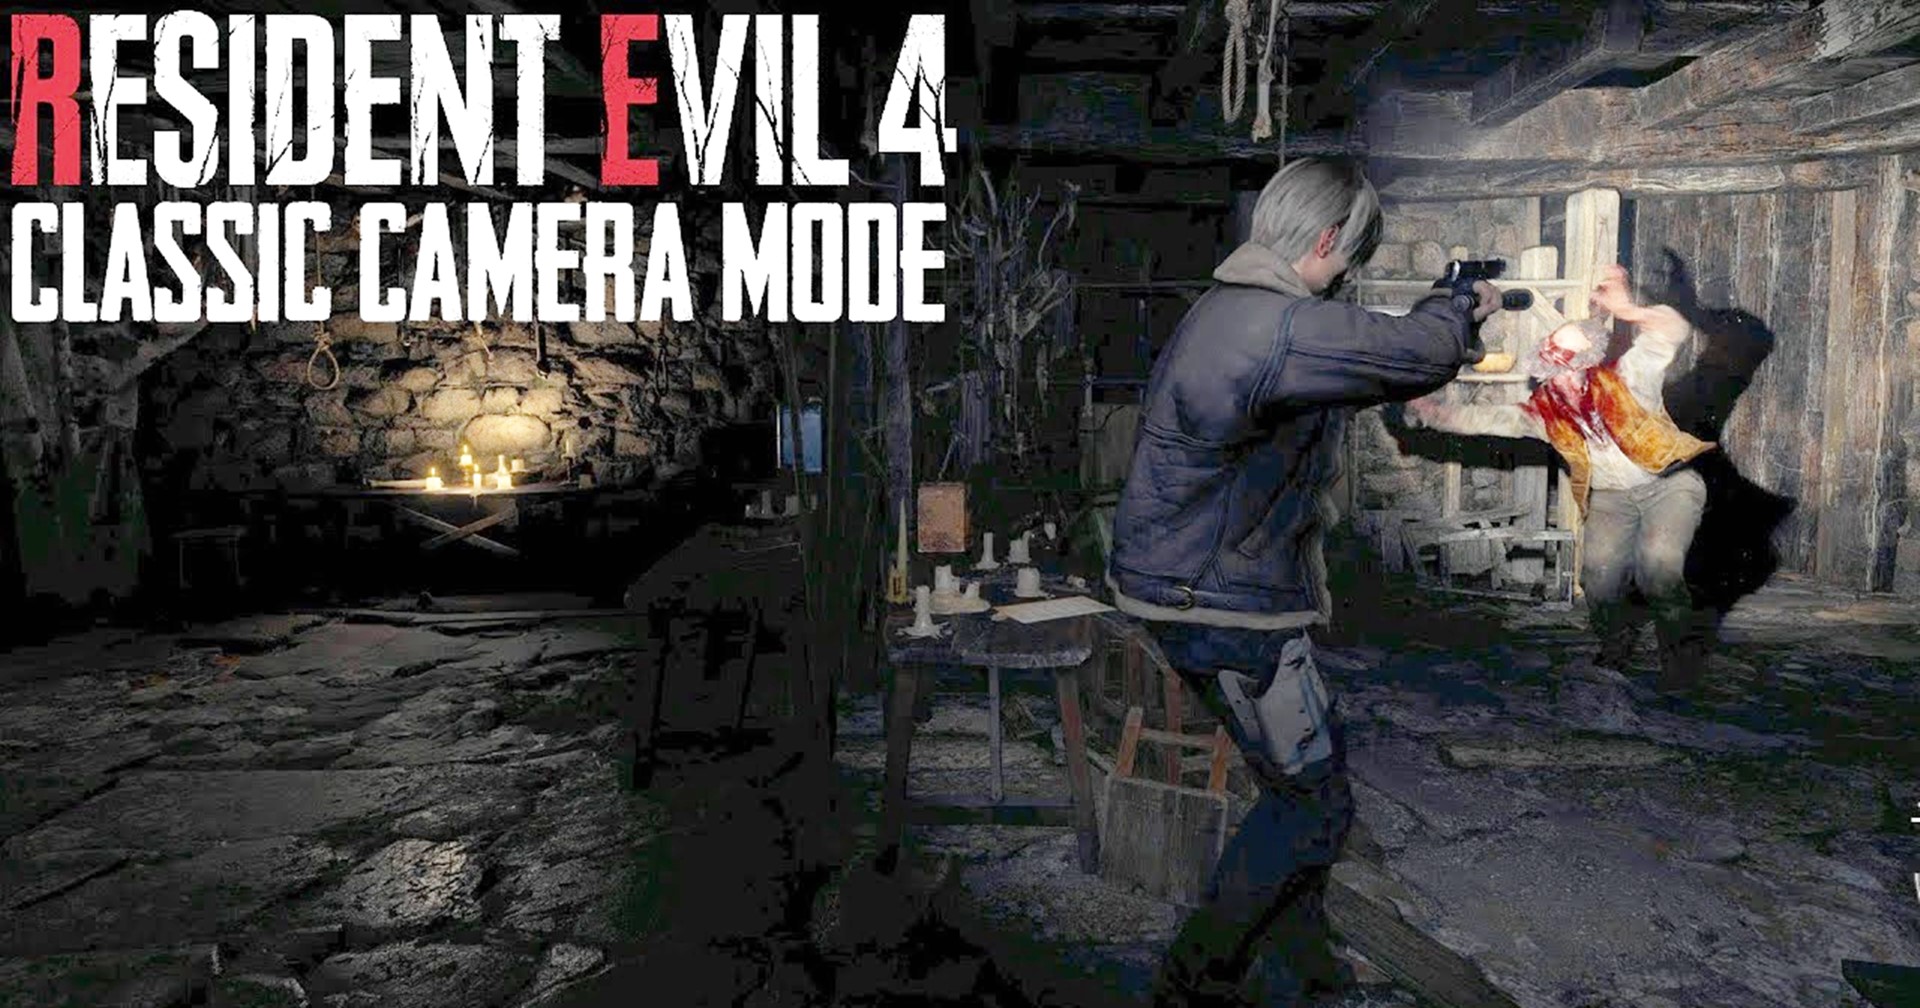 แฟนเกมเปิดตัว Resident Evil 4 Remake ที่ปรับเปลี่ยนมุมกล้องให้เป็นแบบภาคแรก